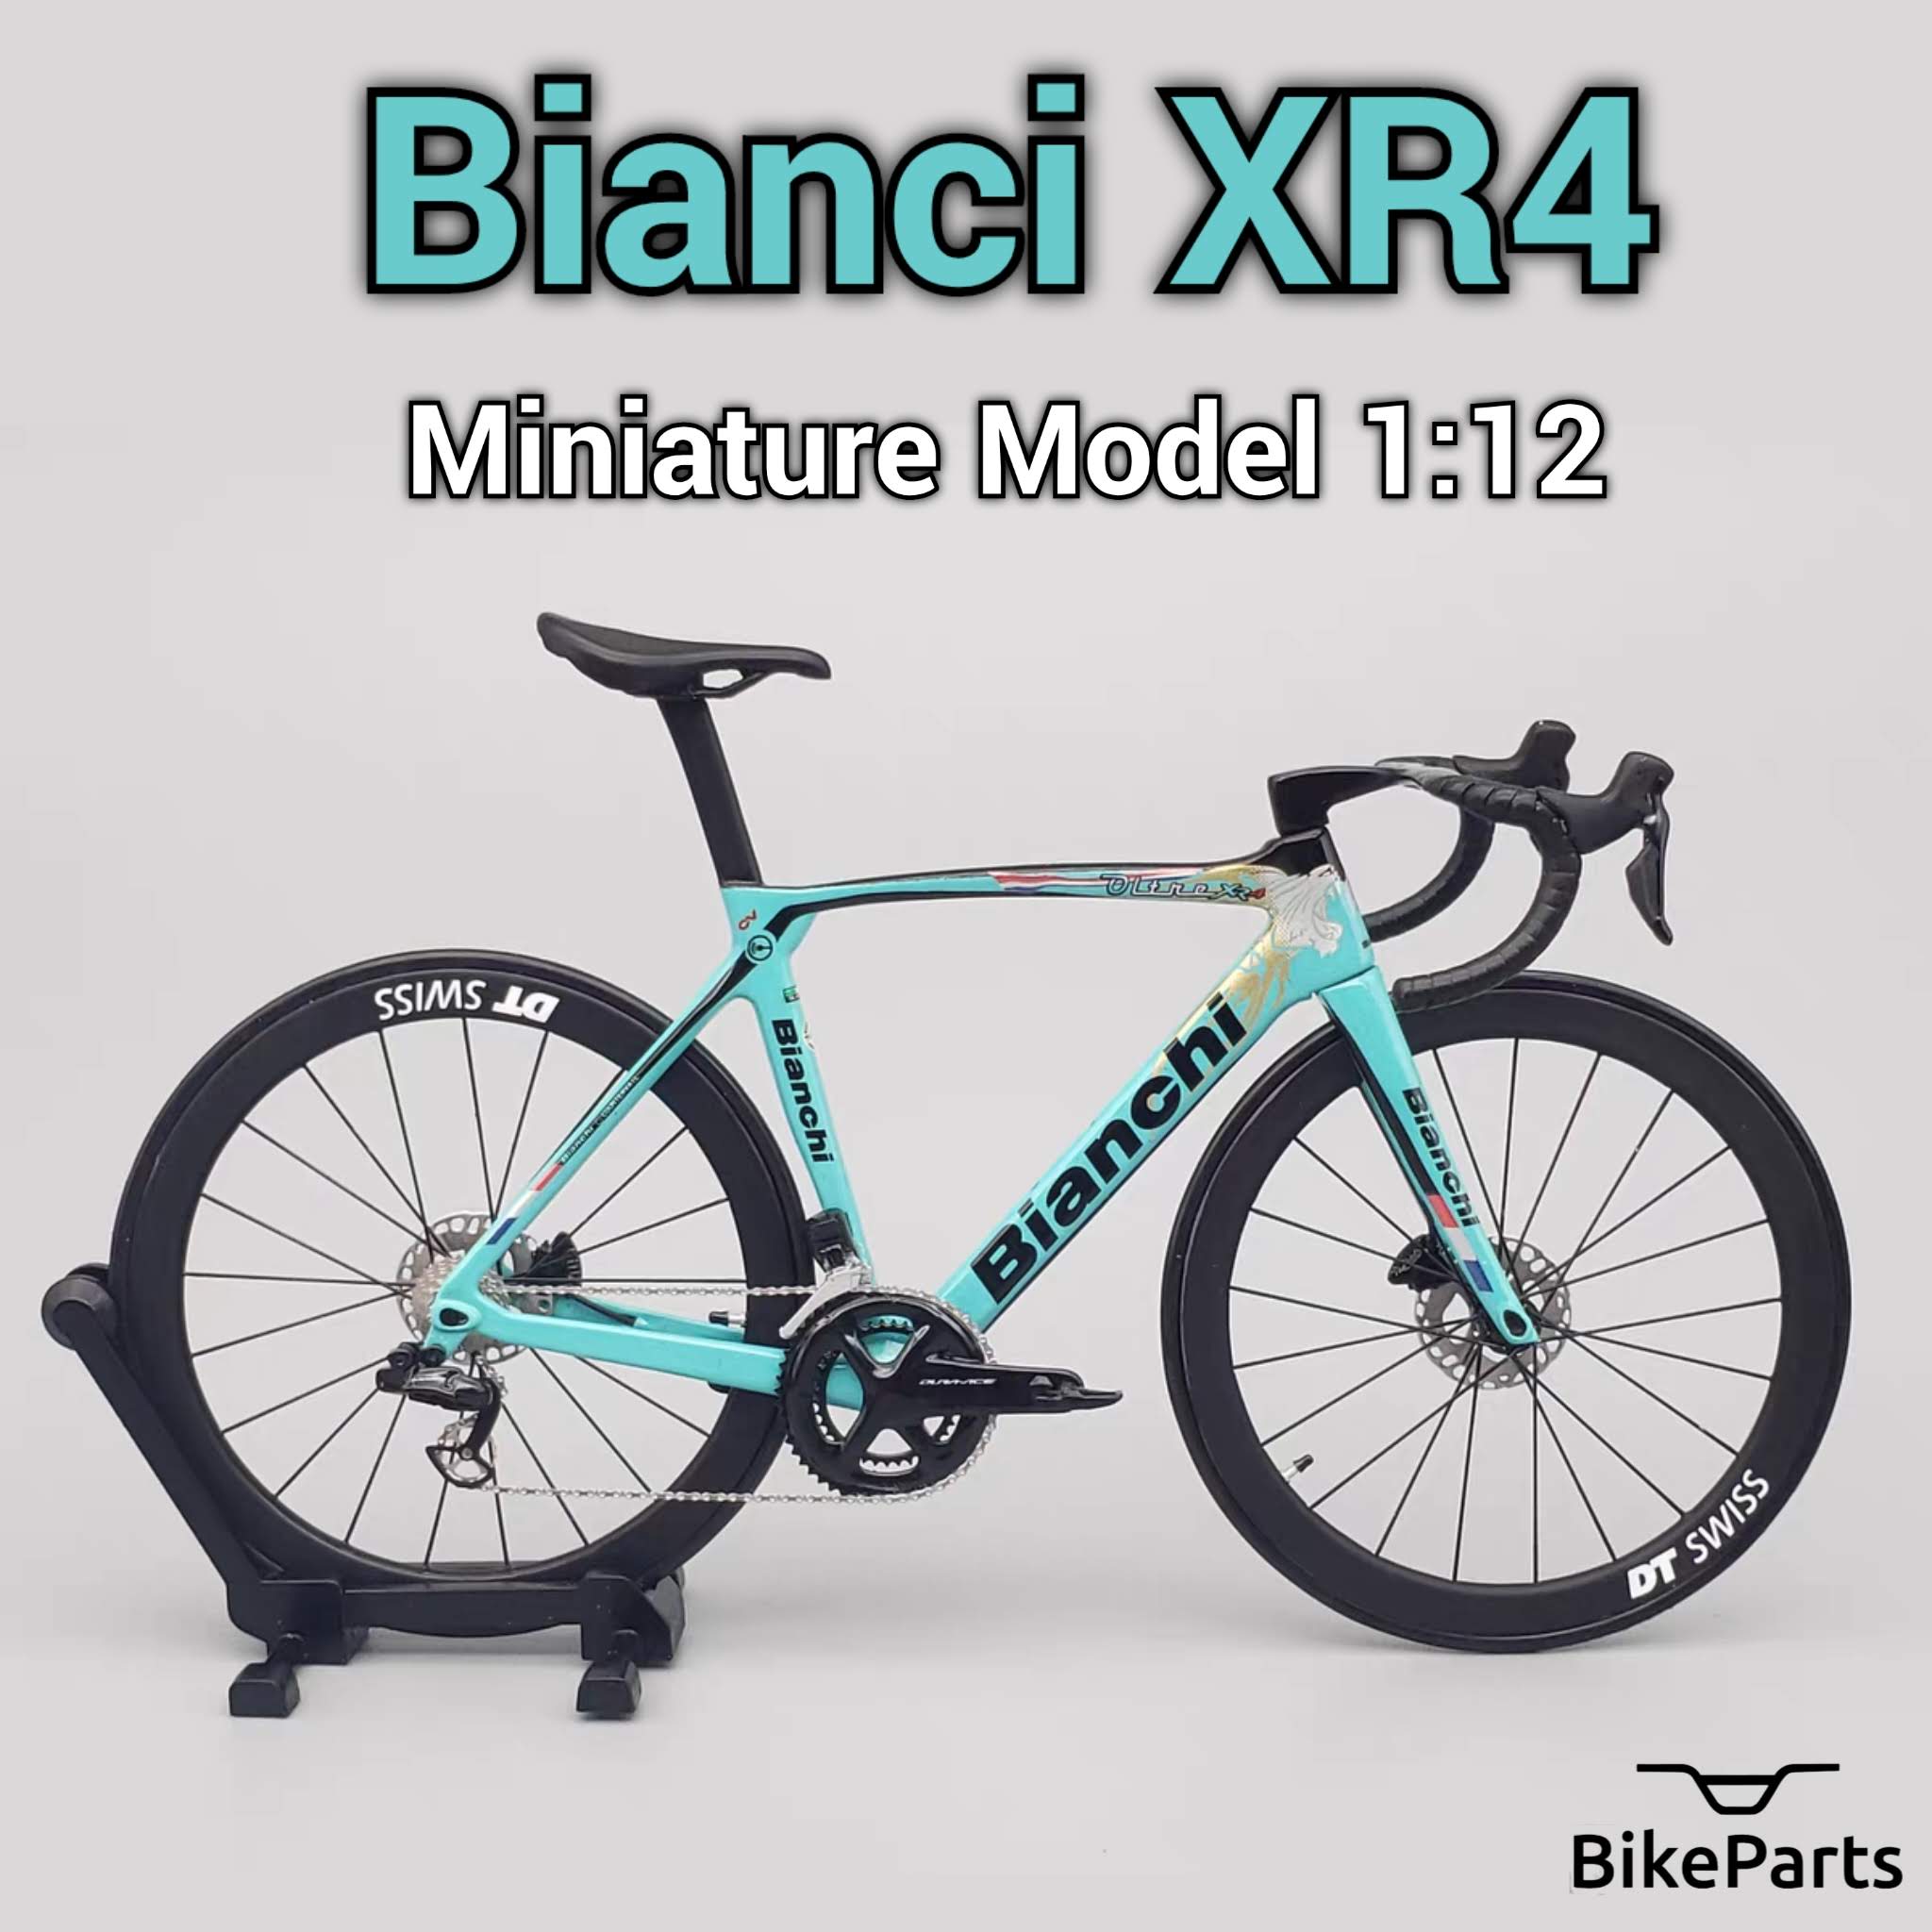 Bianchi Oltre XR4 Specialissima ミニチュア モデル 1:12 ロードバイク |友人や自分自身へのギフト  |スケールモデル |カスタムメイドの超リアル